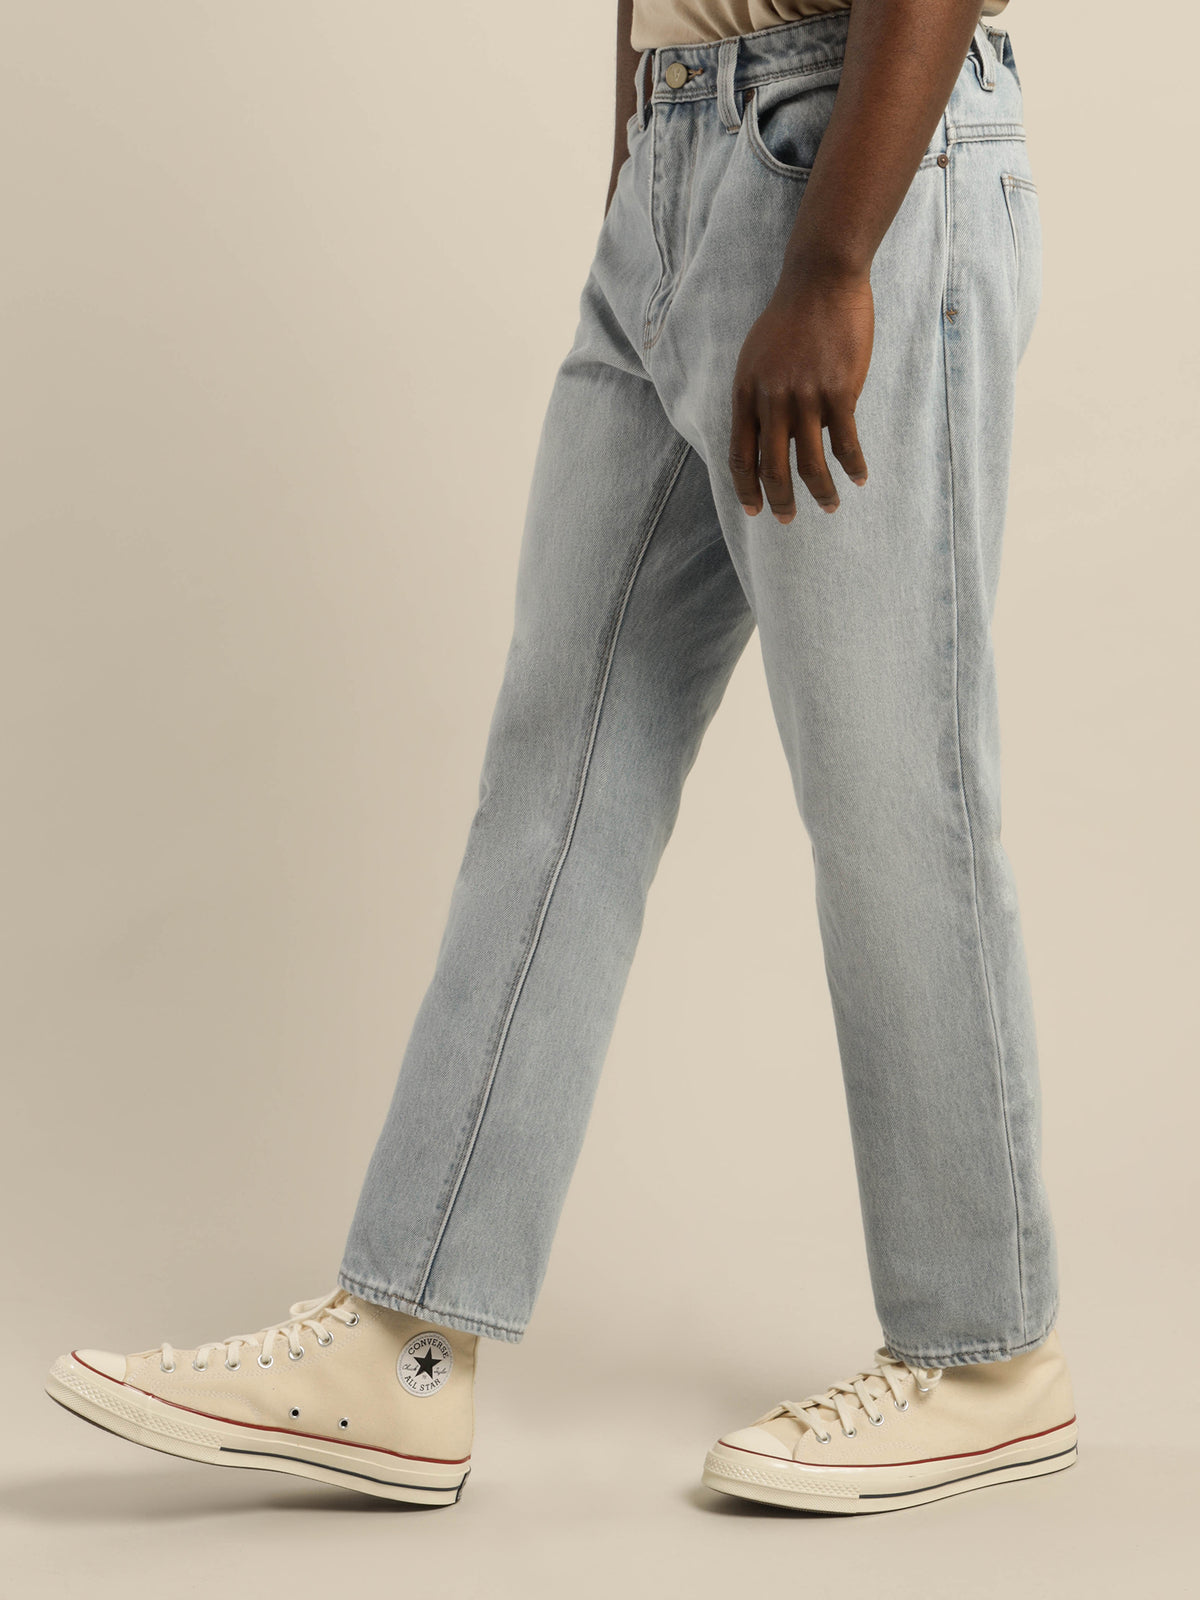 A Straight Big Show OG Jeans in Light Vintage